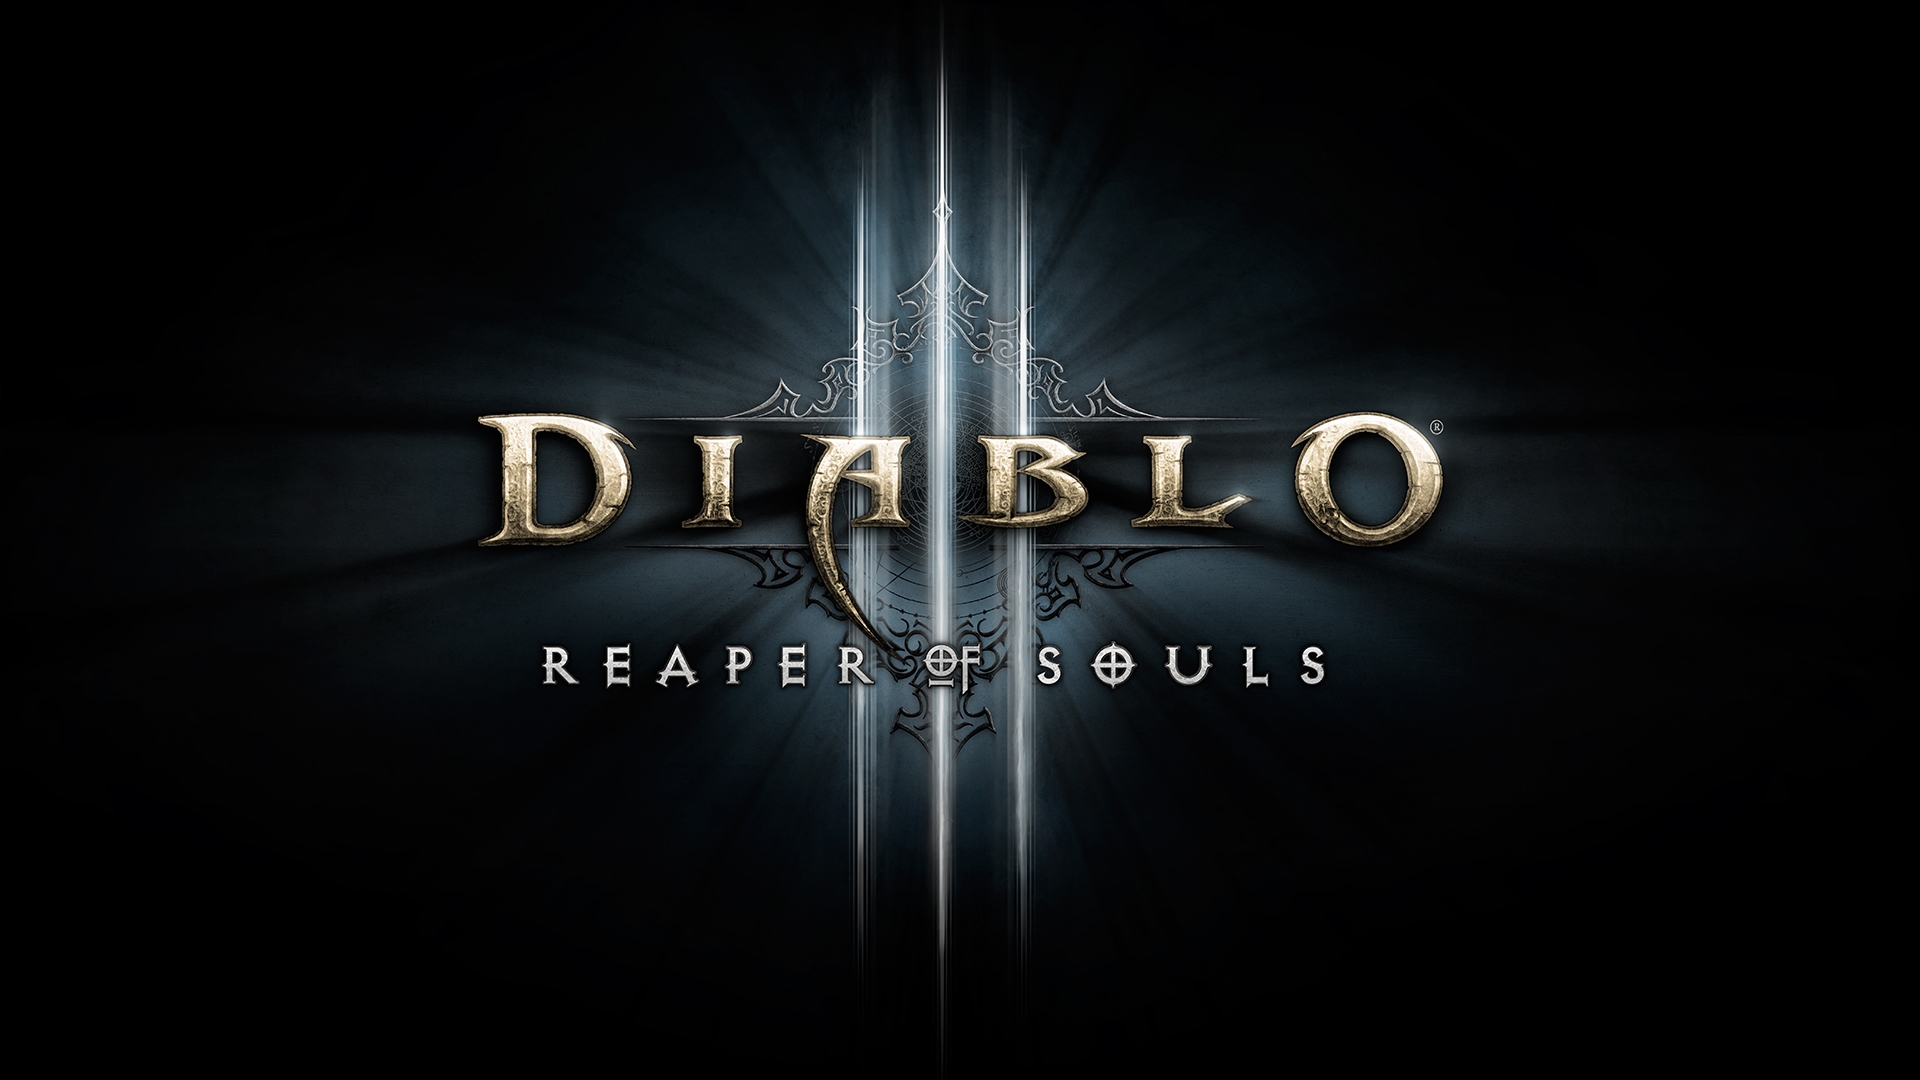 diablo 3 reaper of souls full game free download pc